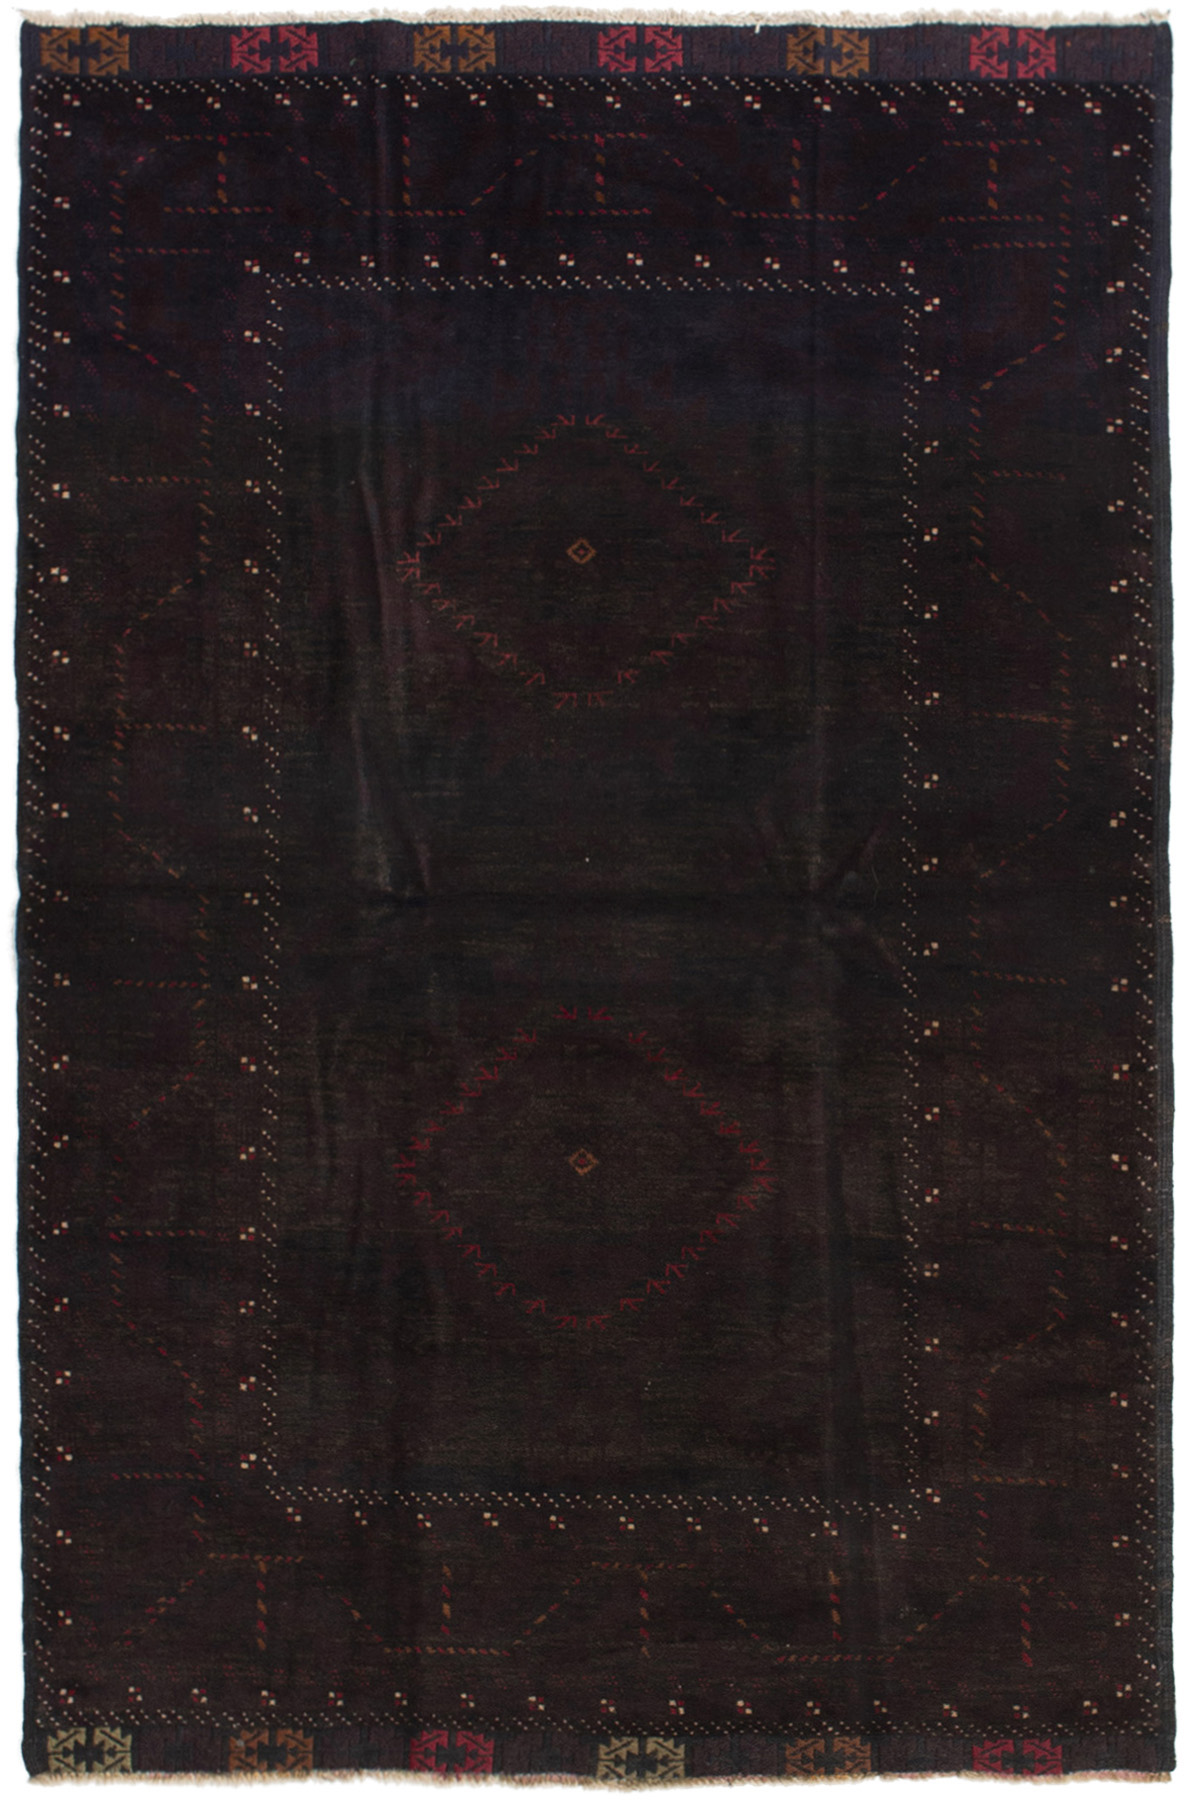 Hand-knotted Finest Rizbaft Dark Burgundy Wool Rug 4'4" x 6'5" Size: 4'4" x 6'5"  